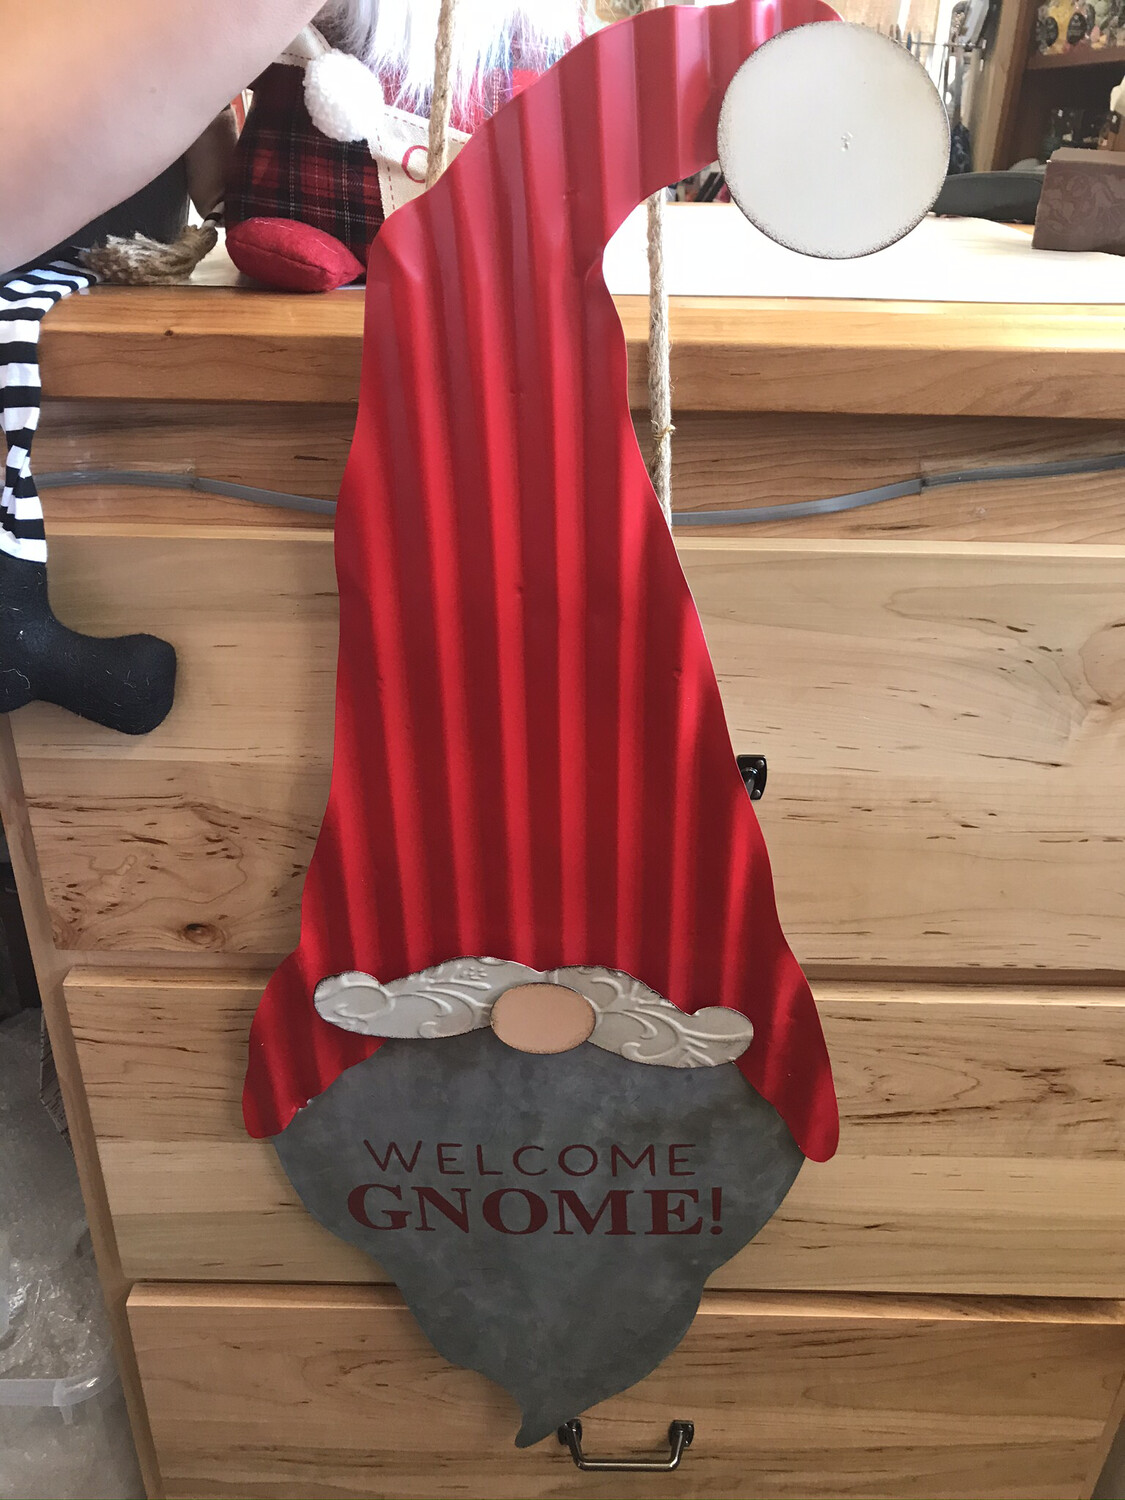 Gnome Door Hanger